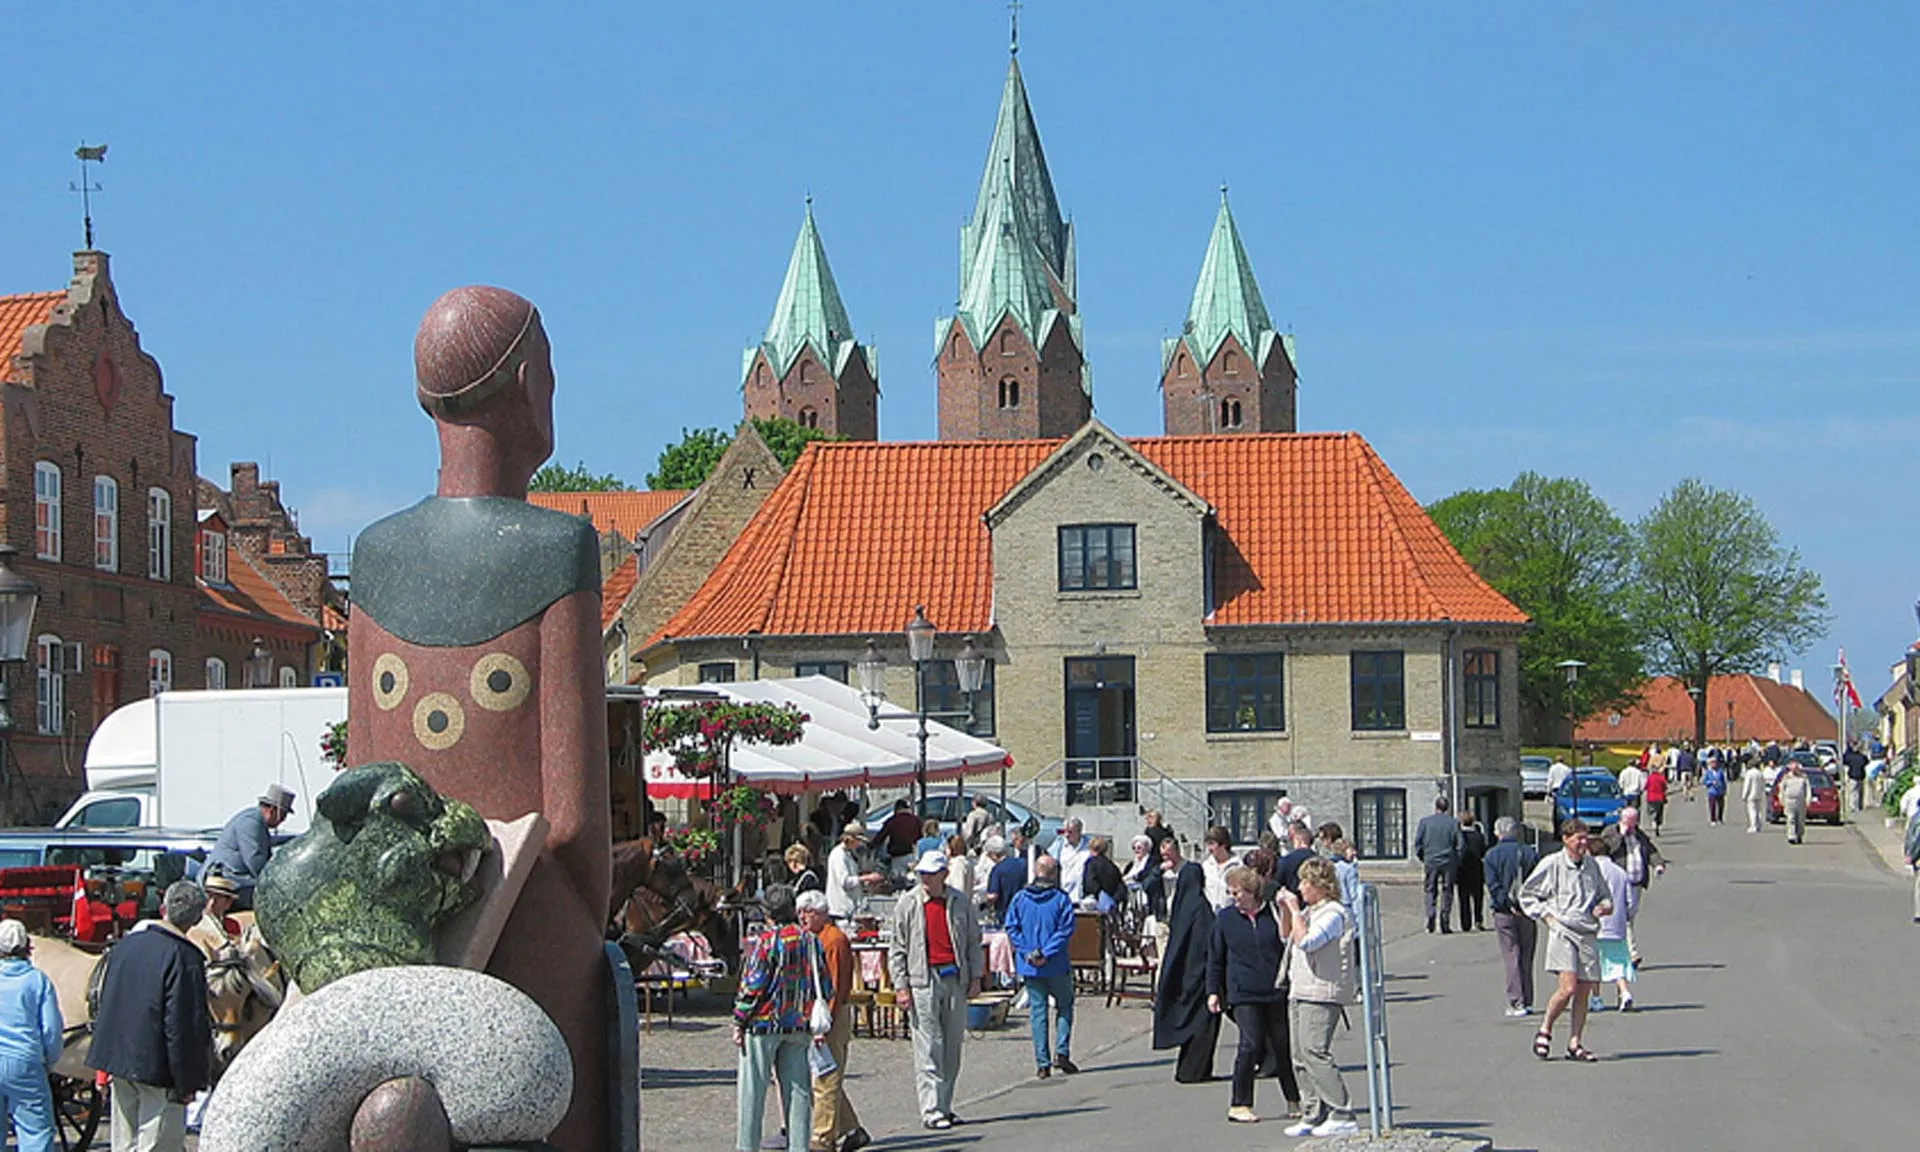 Besøg Højbyen i Kalundborg, og lad dig fange af det historiske vingesus. Byen har bygninger dateret helt tilbage til 1200-tallet og de næste århundrede frem.